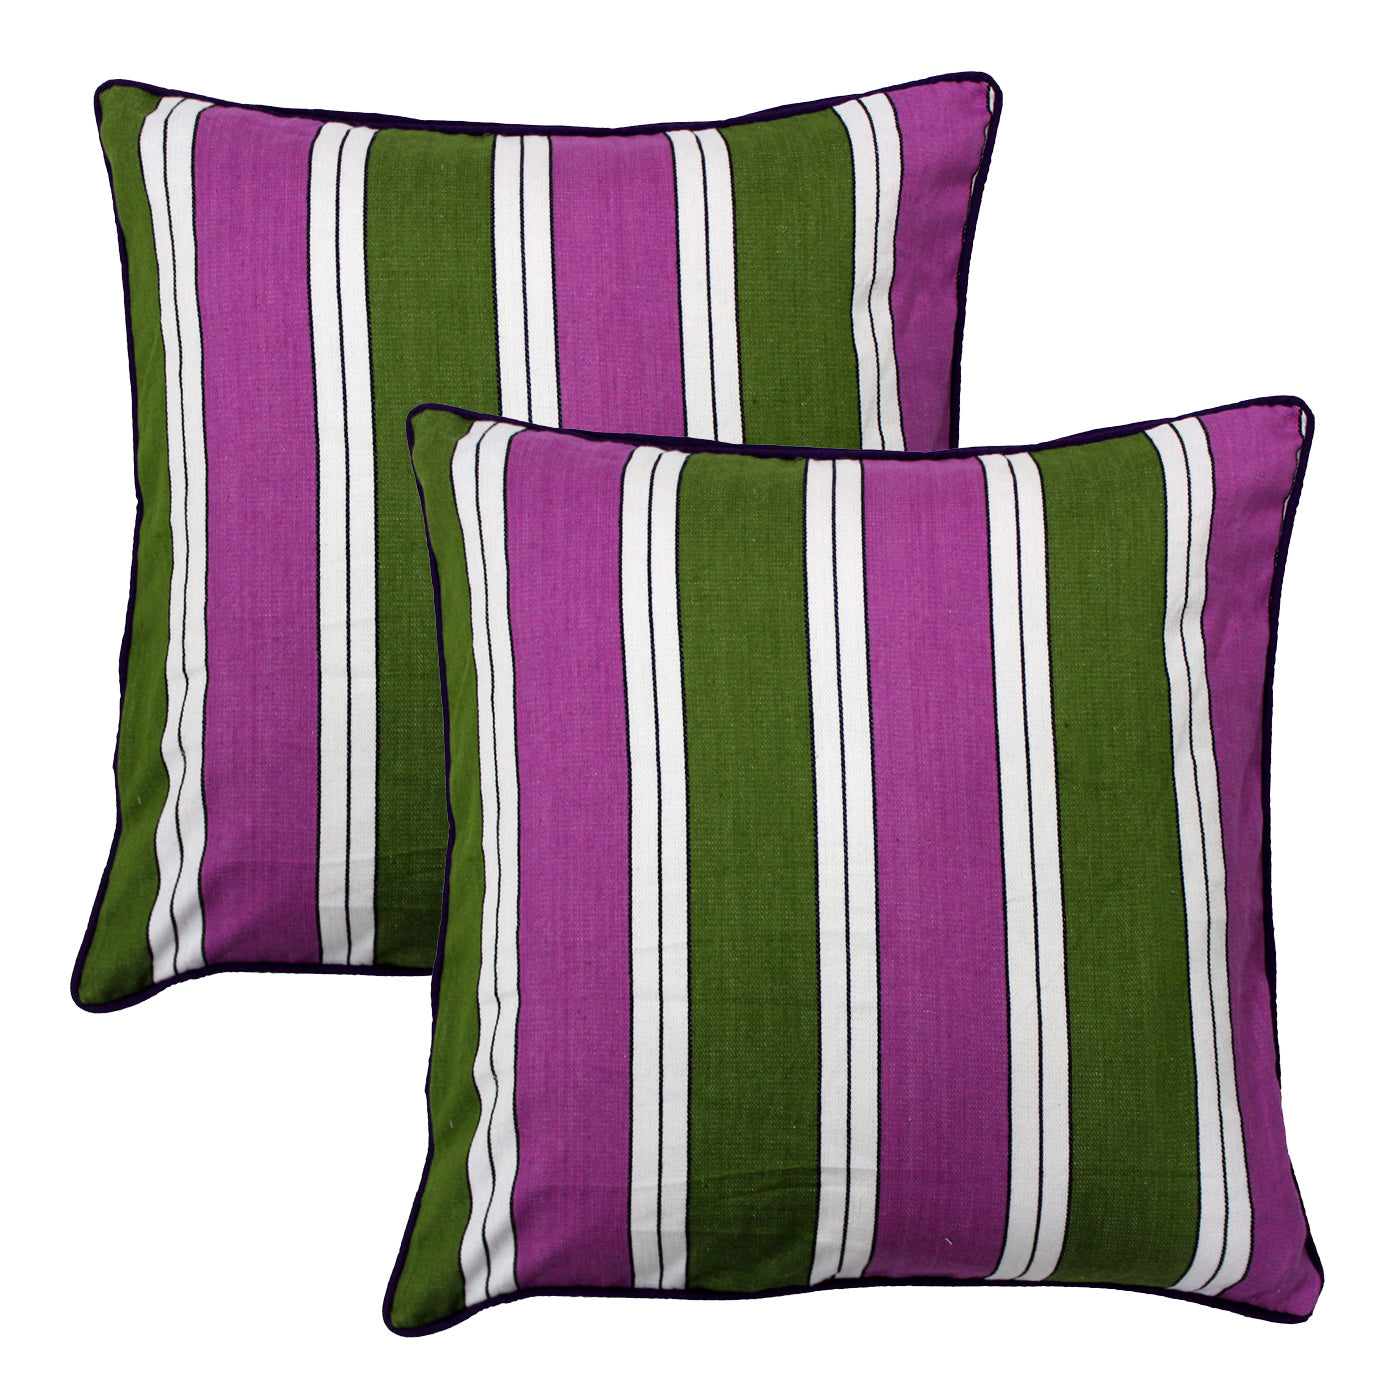 Woven Stripe Cotton Cushion Cover - Multicolor